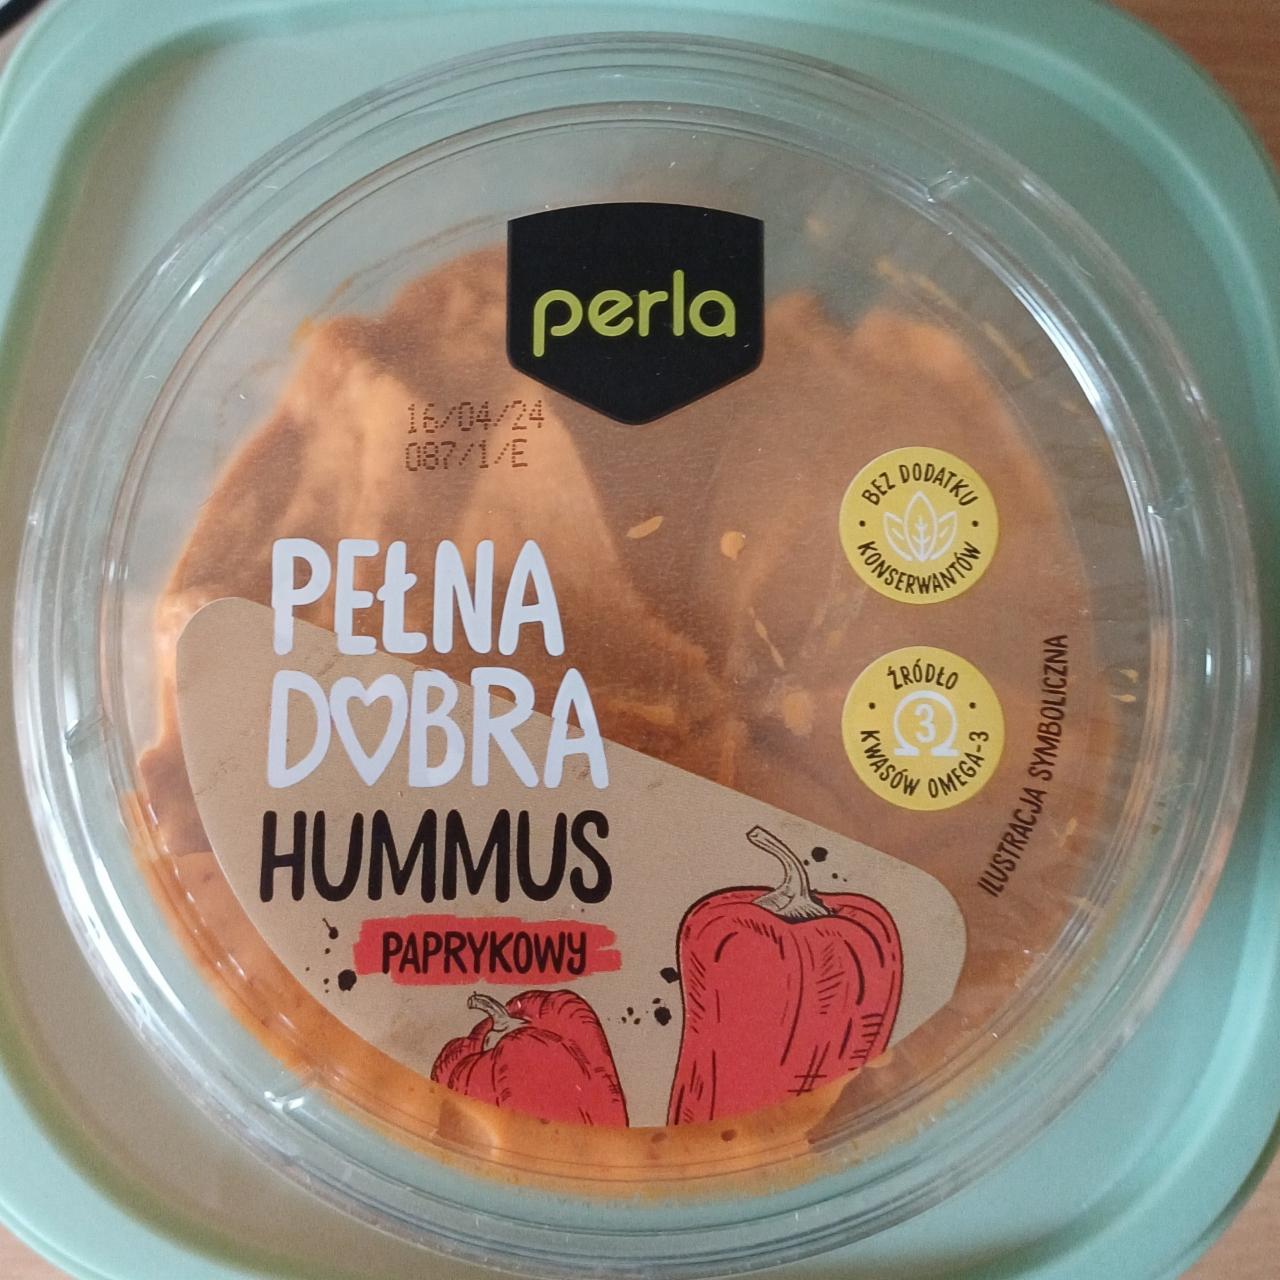 Zdjęcia - Hummus paprykowy Perla